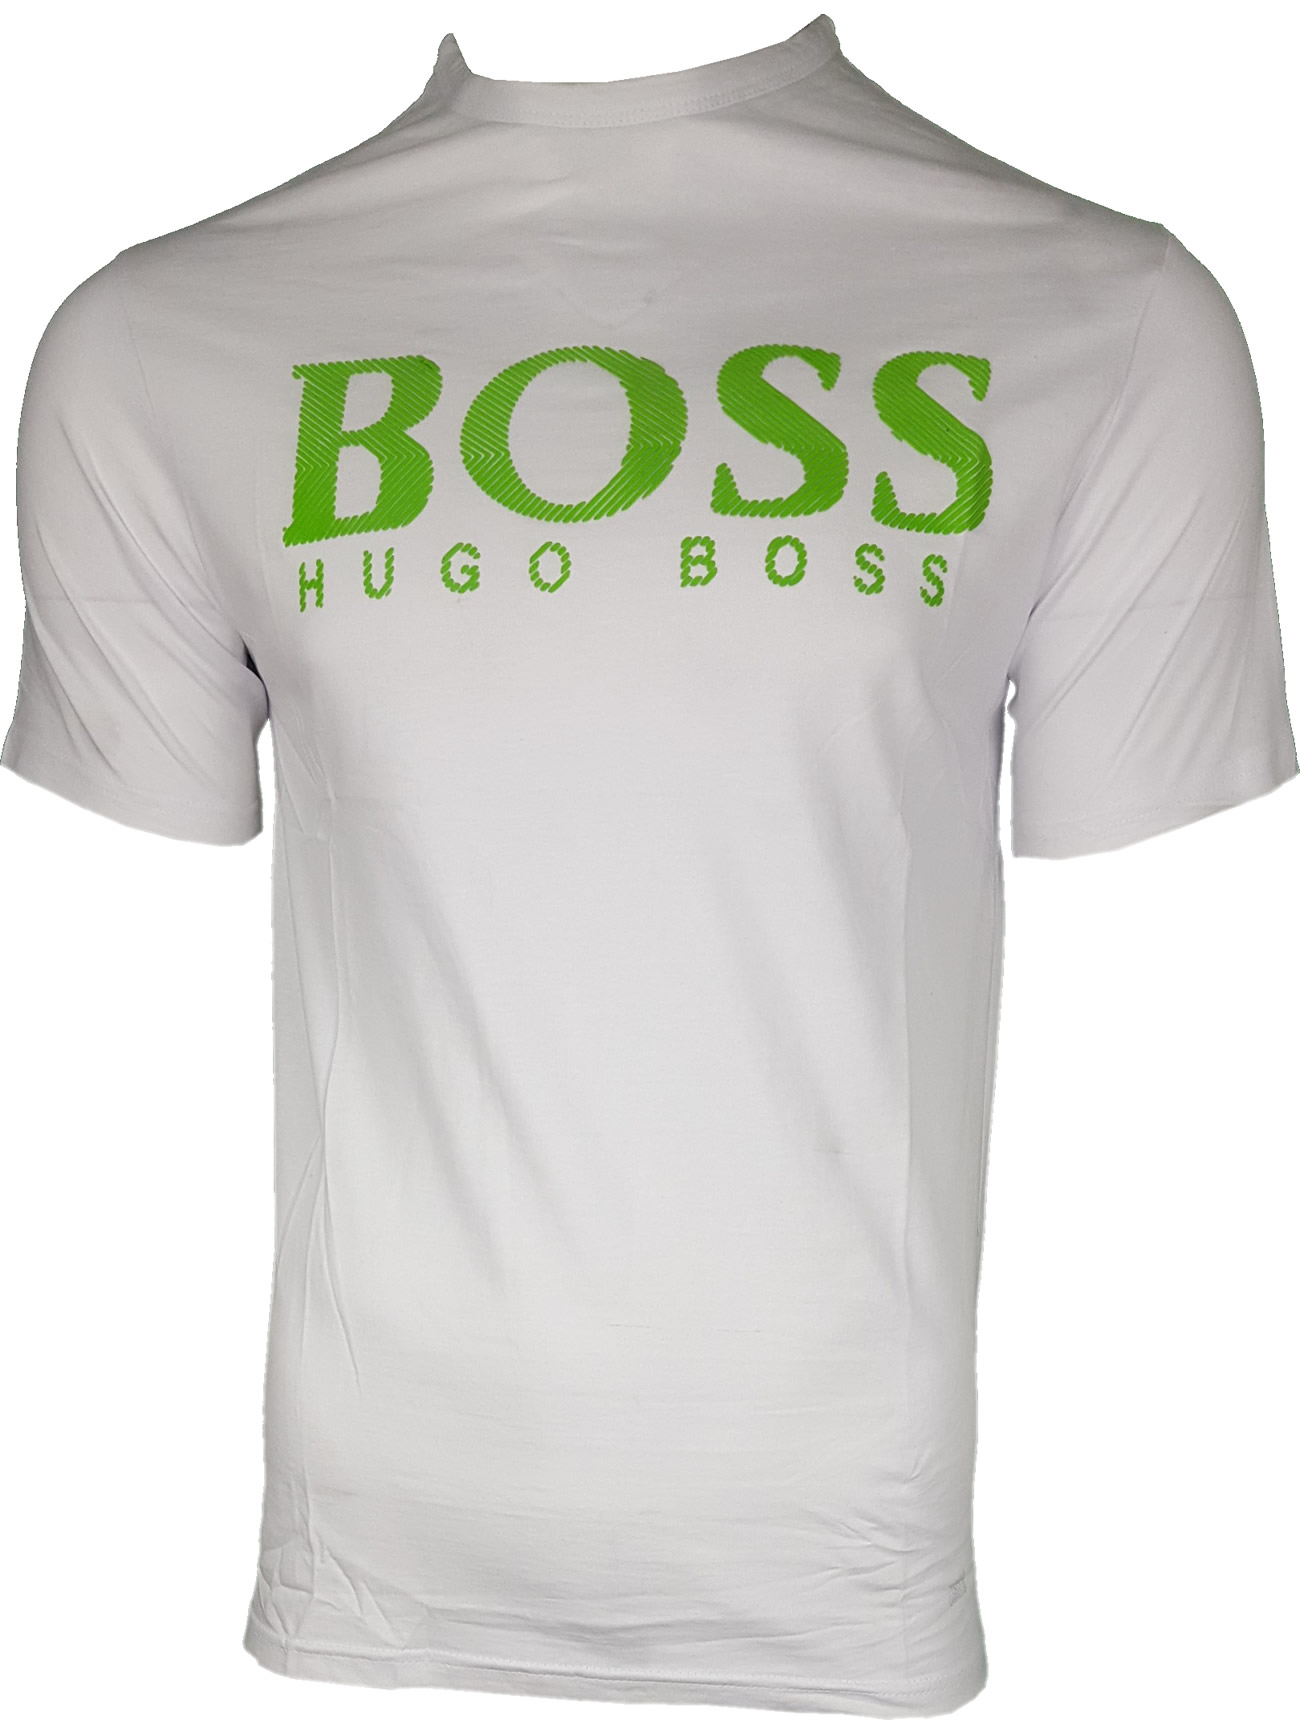 Hugo Boss Rubber Chest Print. Short Sleeve Crew T-Shirt in White-Green ...